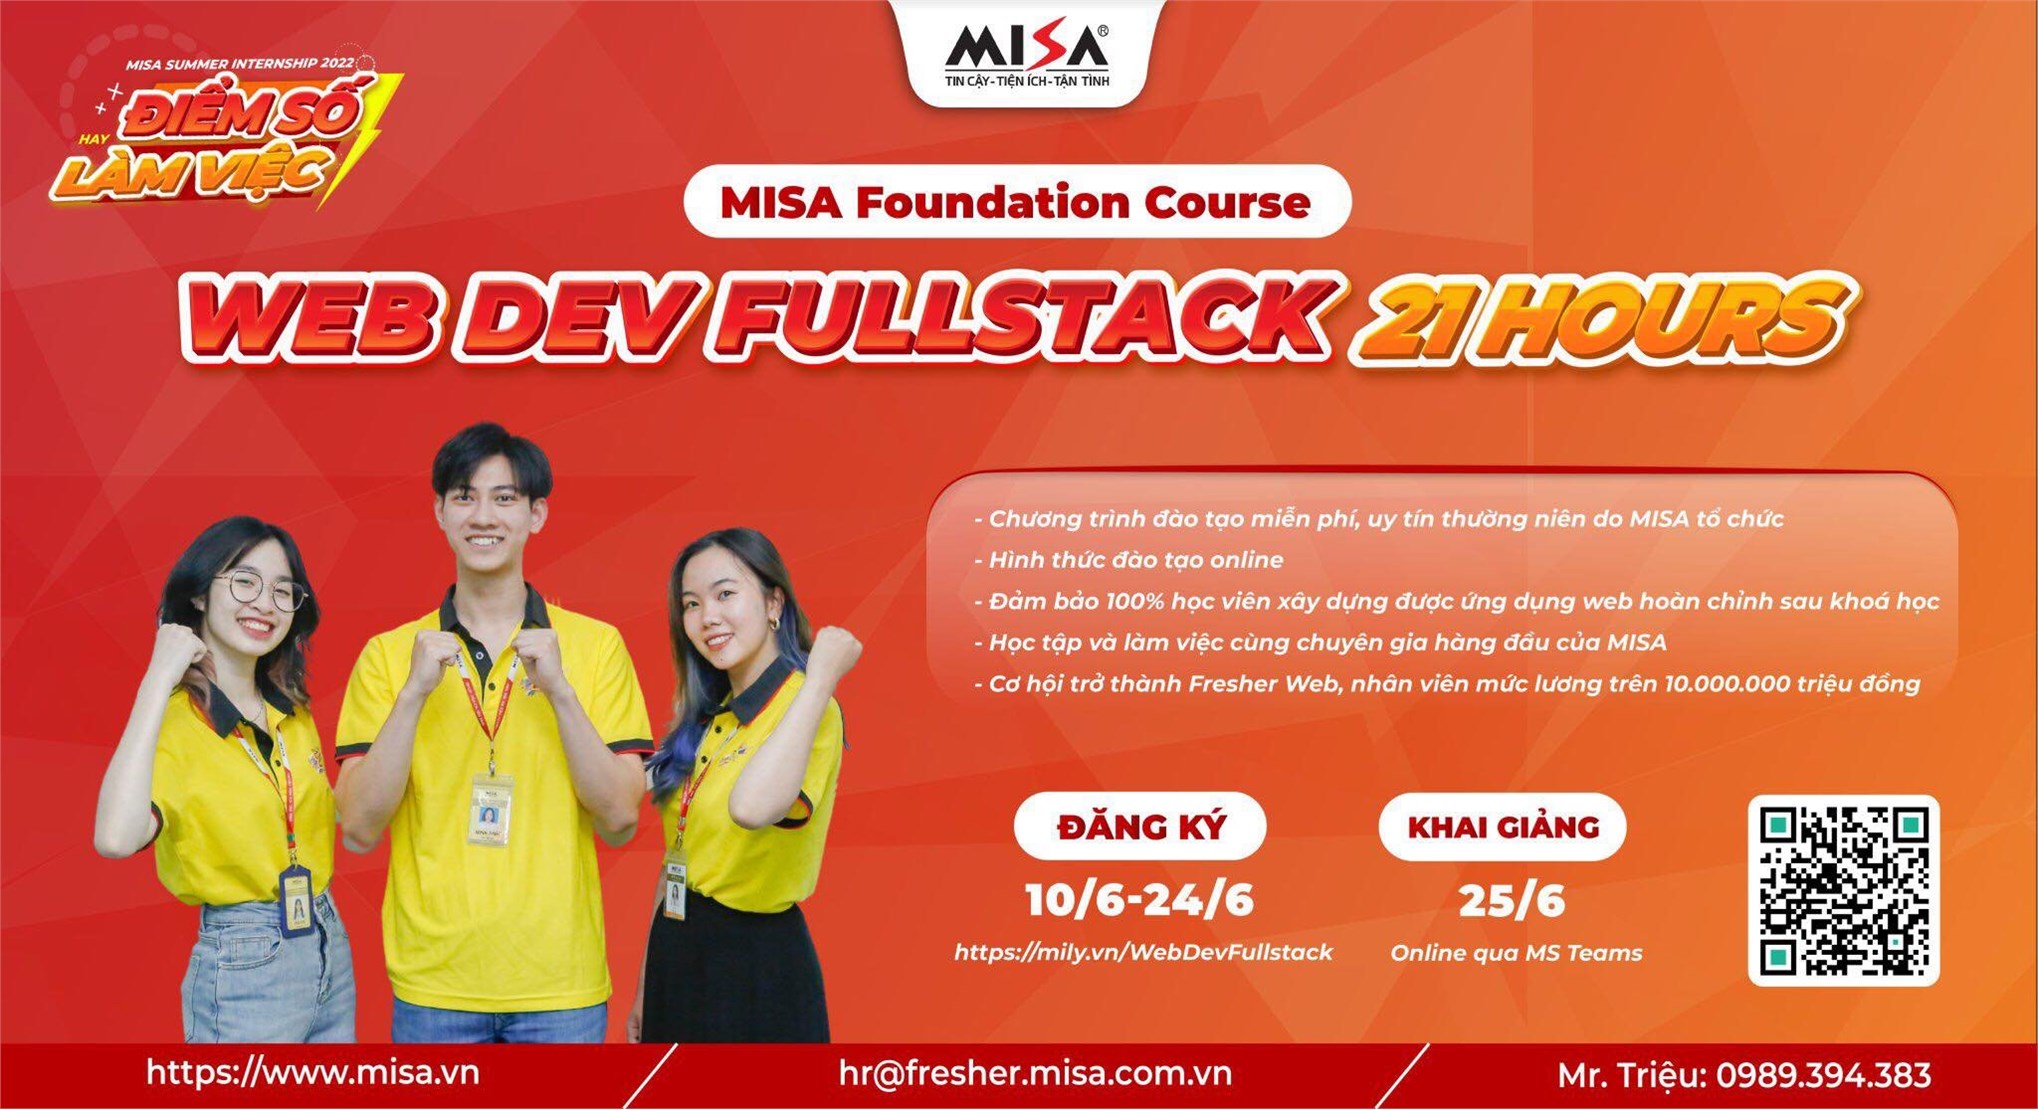 Đăng ký MISA Foundation Course - Web Dev Fullstack 21 hours